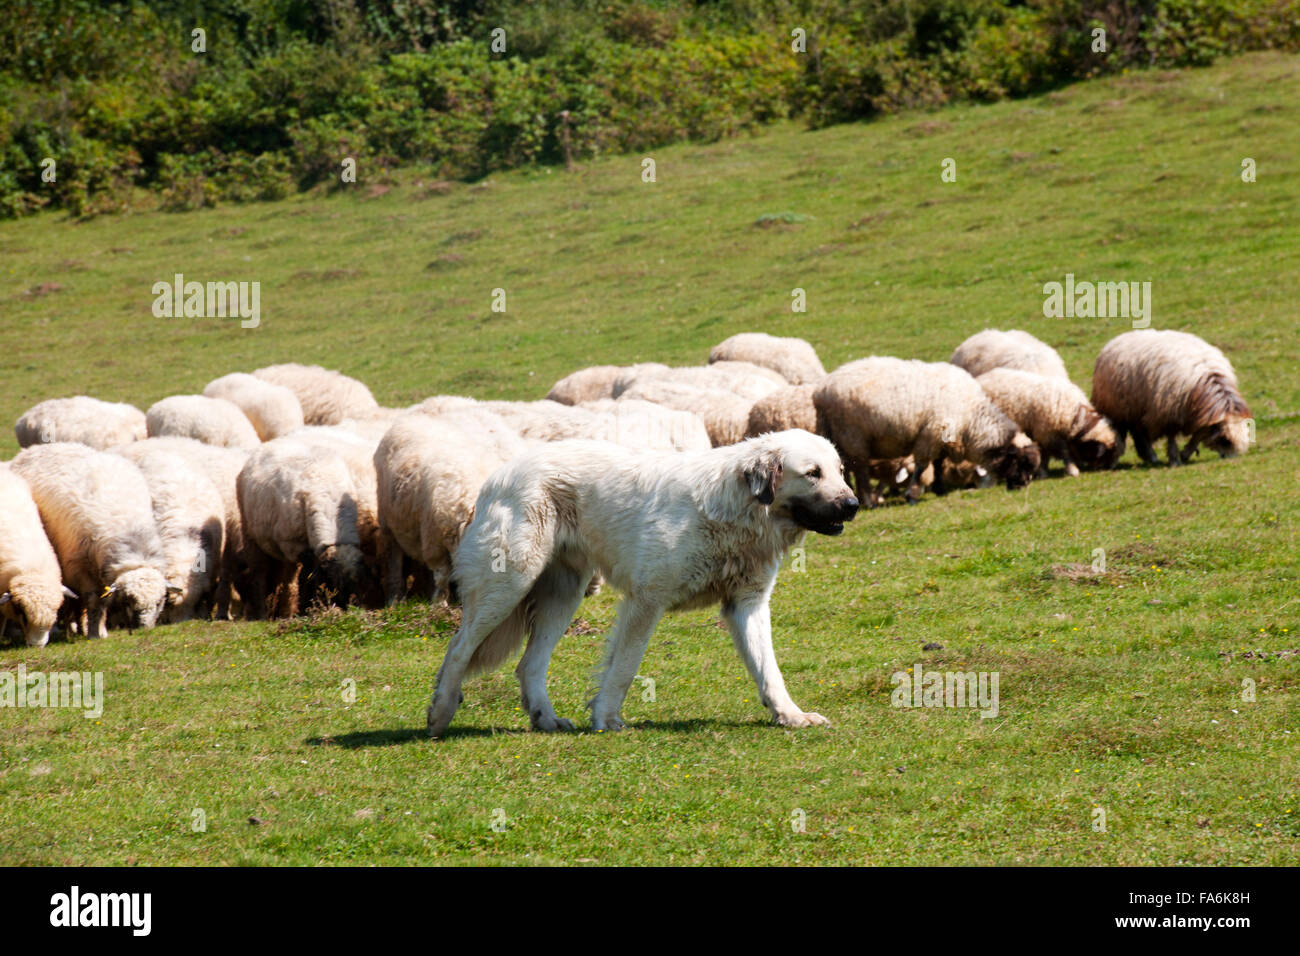 Türkei, westliche Schwarzmeeküste, Provinz Ordu, Persembe Yailasi, Schafherde mit Hirtenhund auf der Hochweide Stock Photo